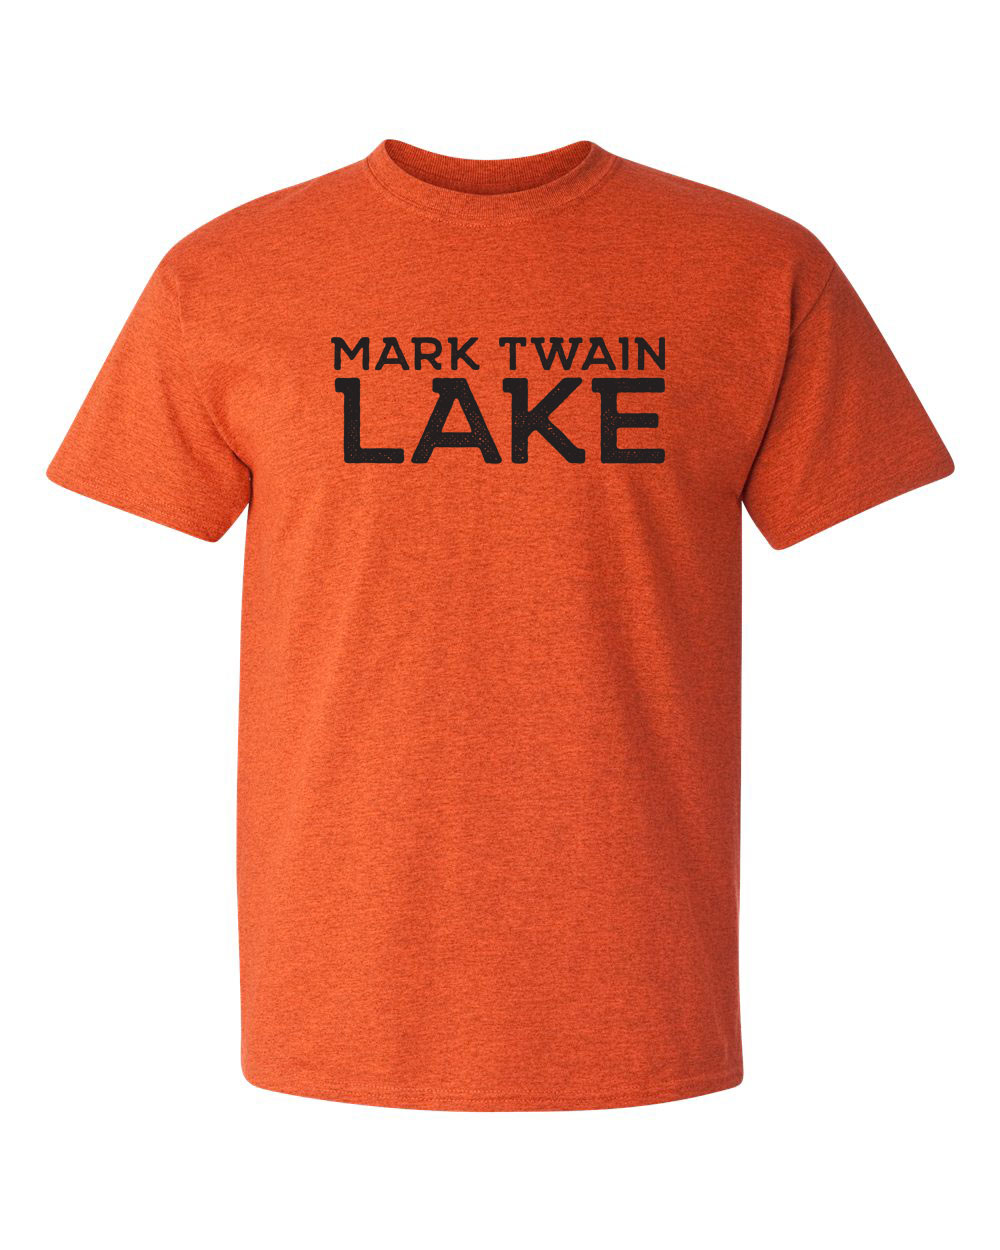 Mark Twain Lake t-shirt